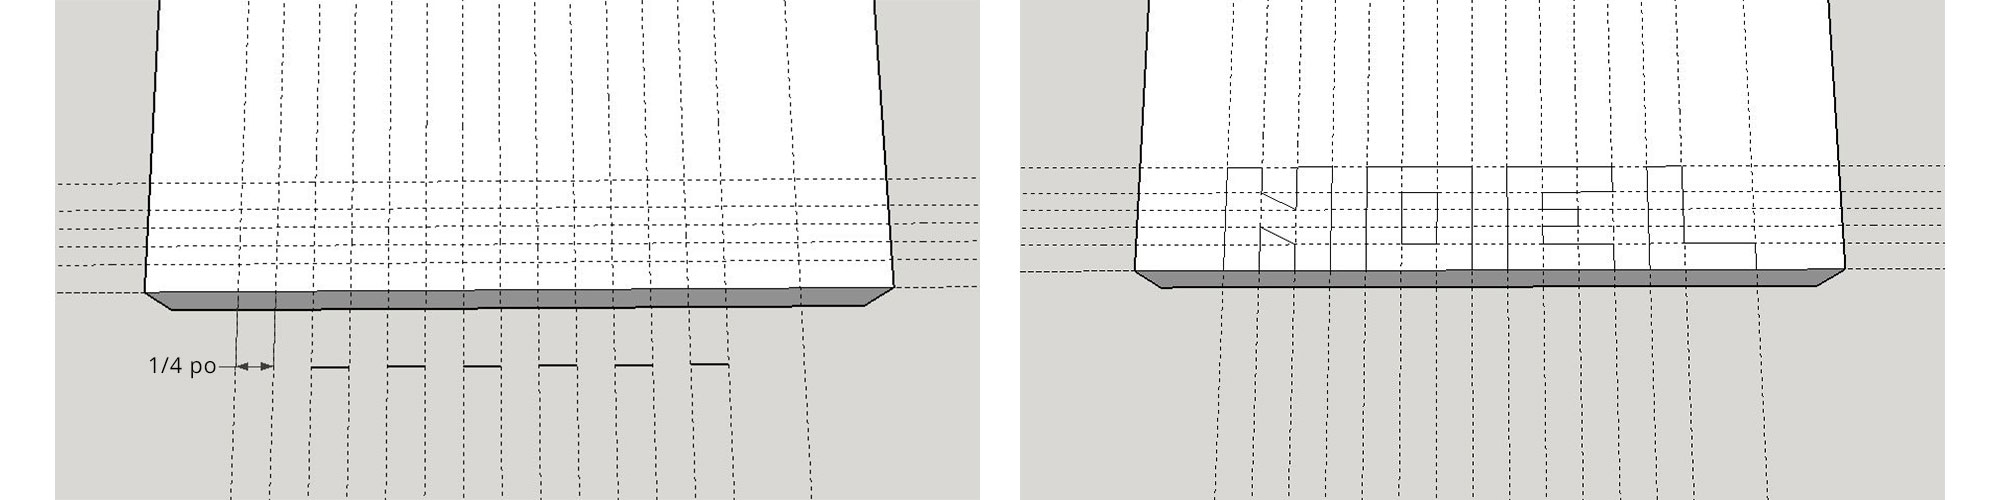 Image de gauche : Dessin technique d’un bout de planche avec des cotations. Image de droite : Dessin technique d’un bout de planche avec des lettres tracées.